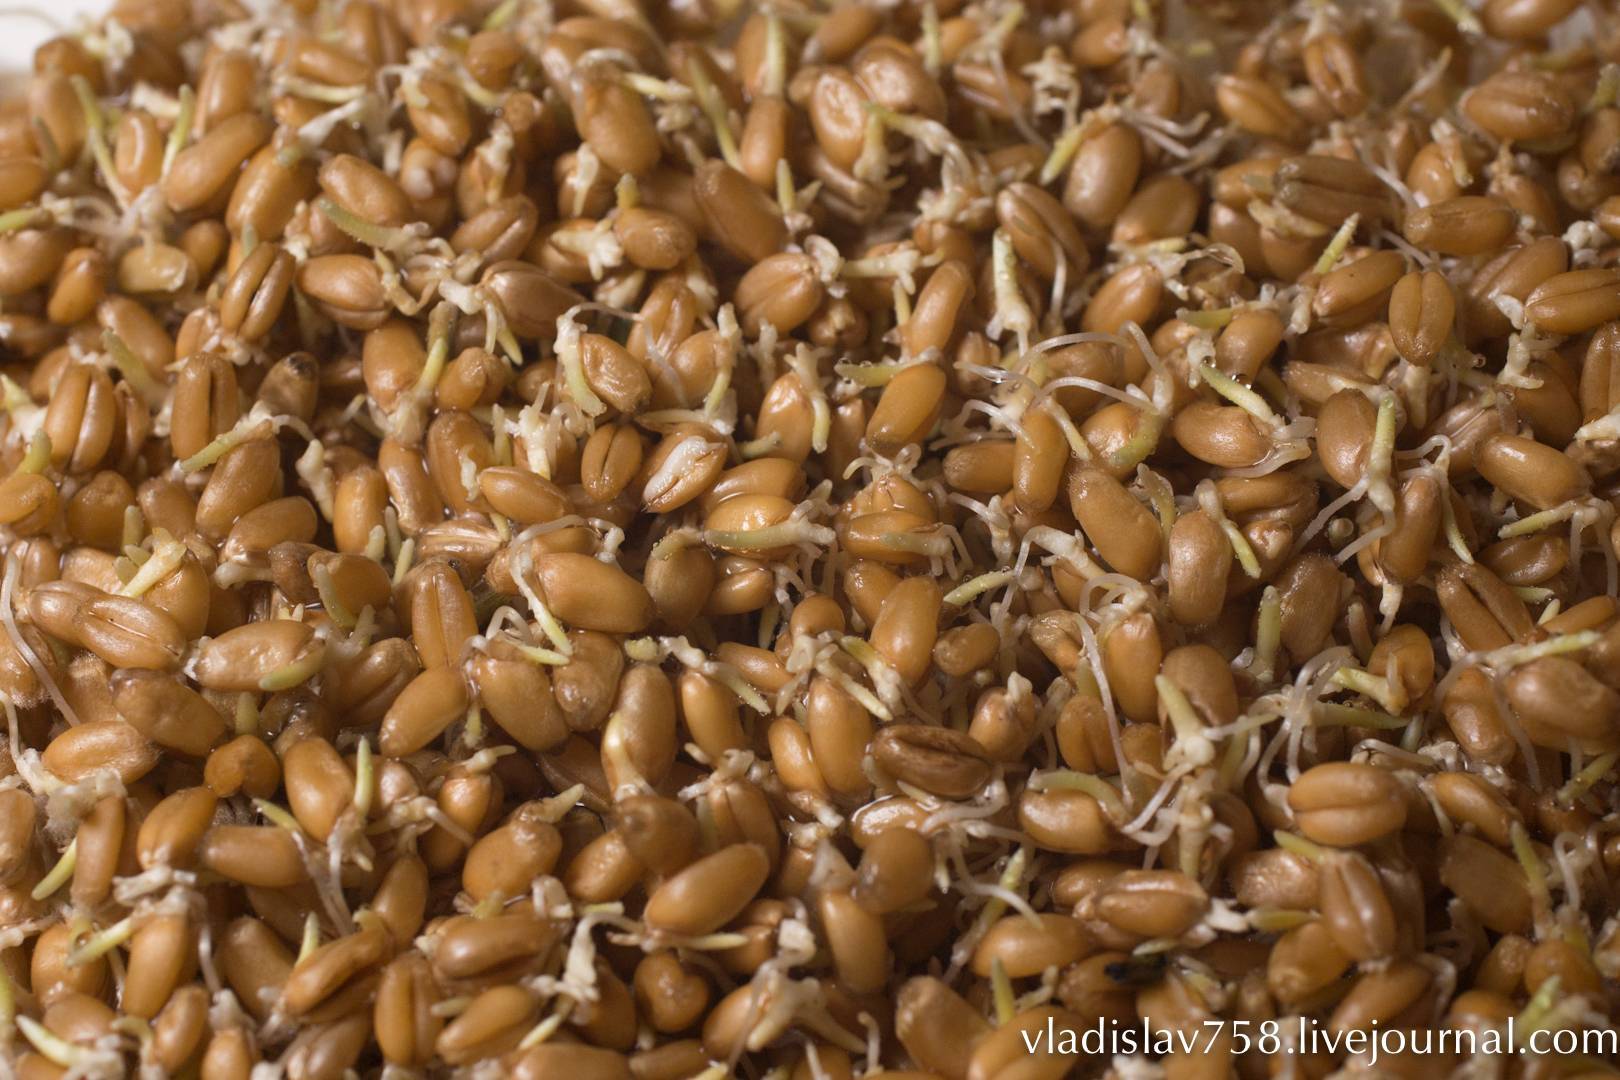 Проросшая пшеница: польза и вред, как принимать